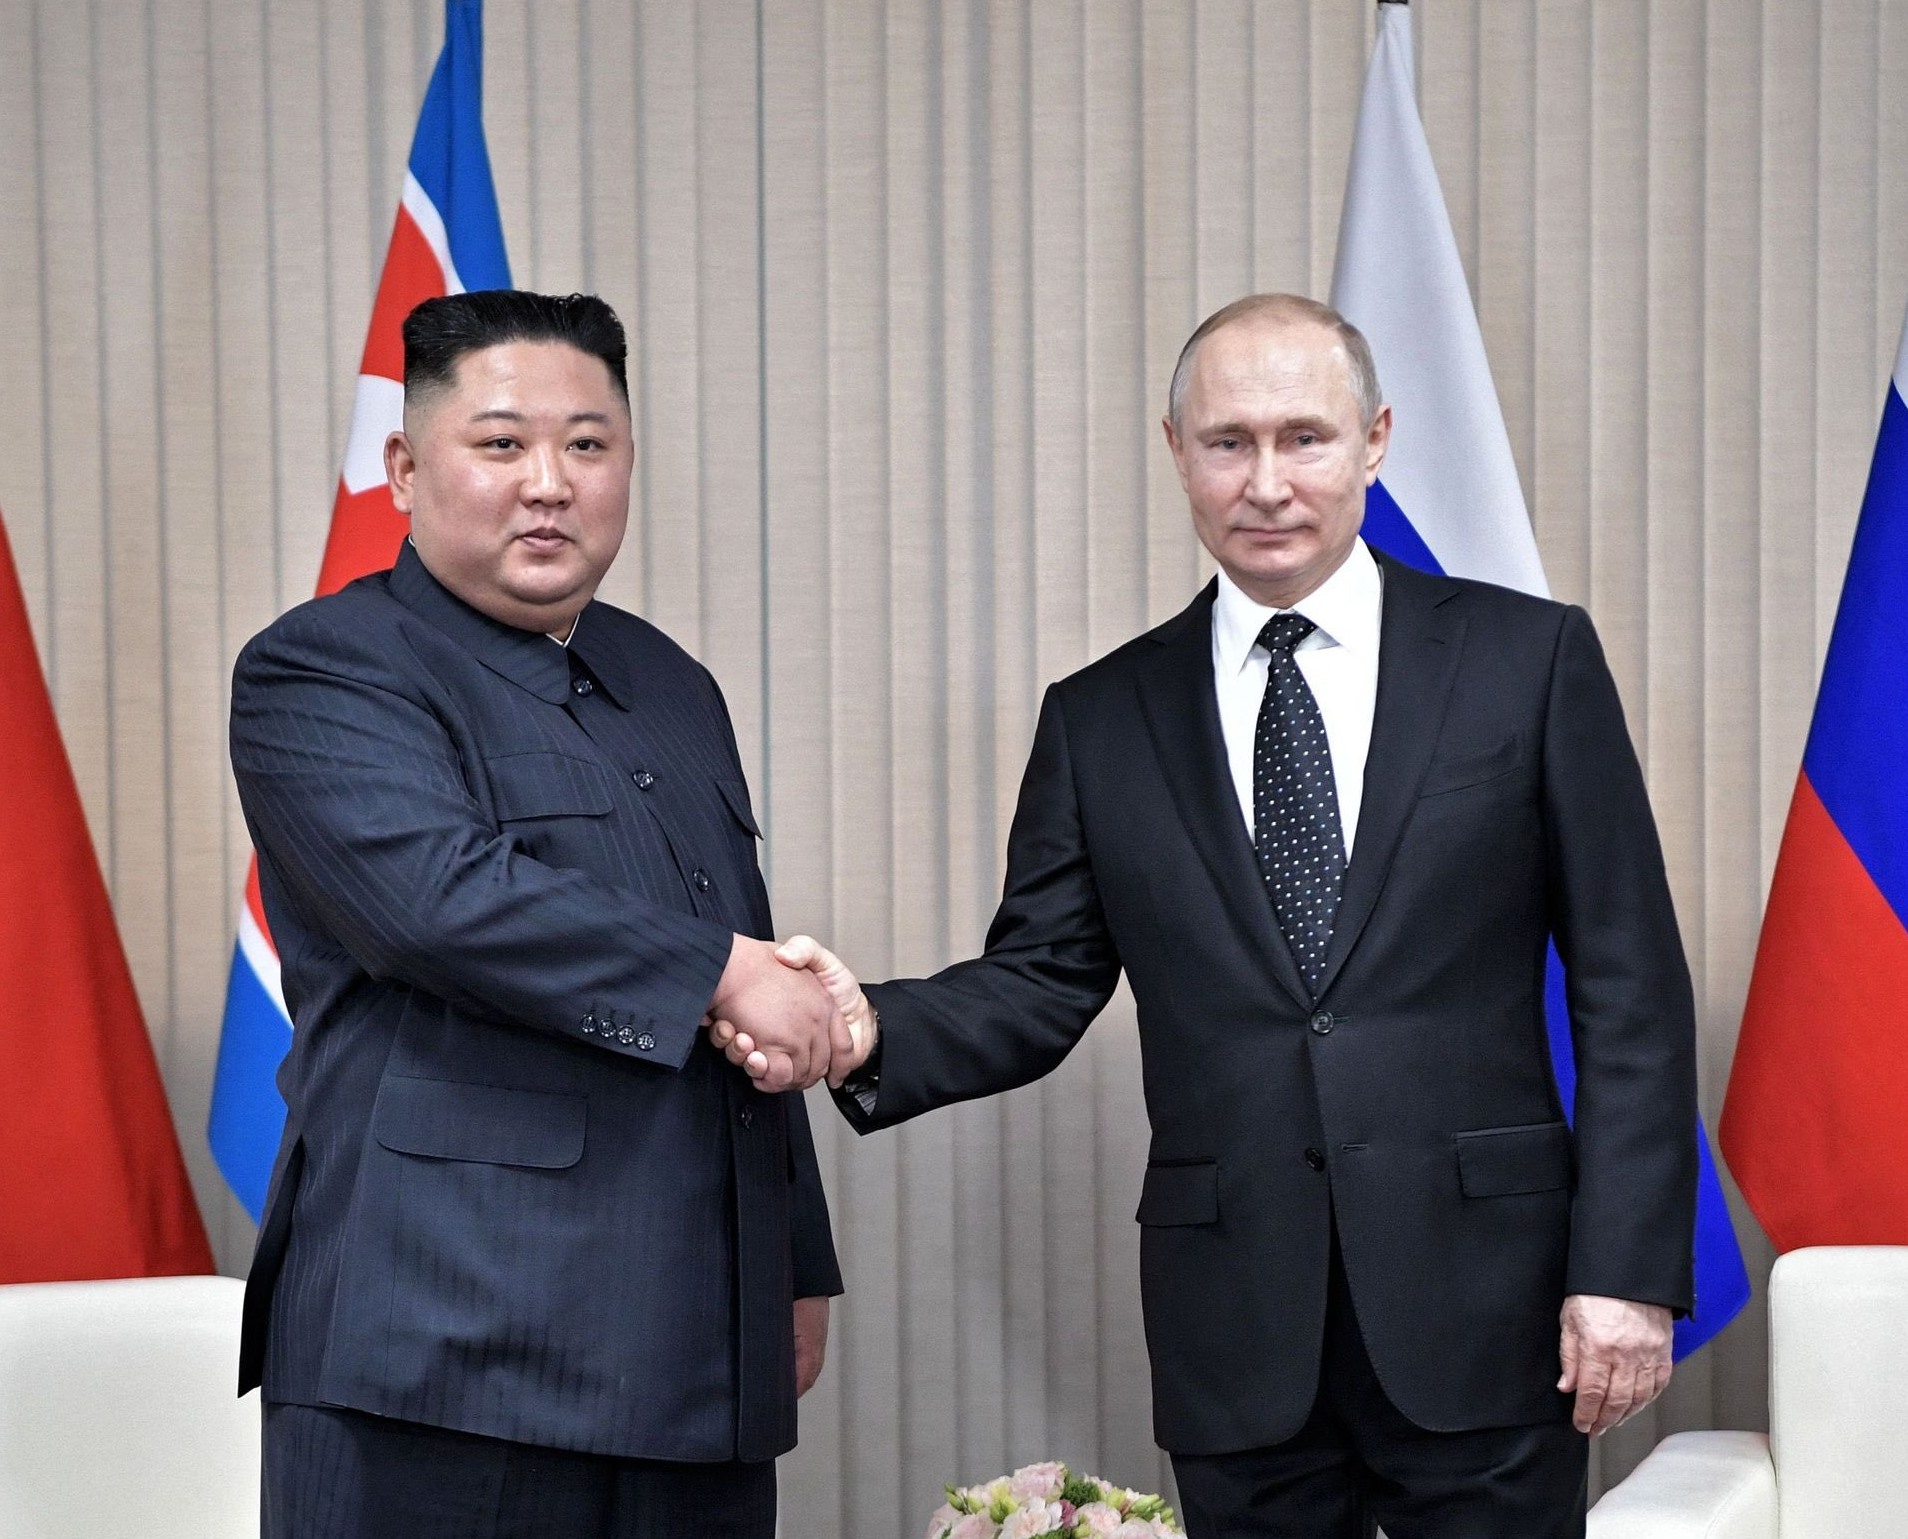 Πούτιν – Κιμ Γιονγκ Ουν συνάντηση: «Έγινε τη σωστή στιγμή και ήταν εποικοδομητική» λέει το Κρεμλίνο